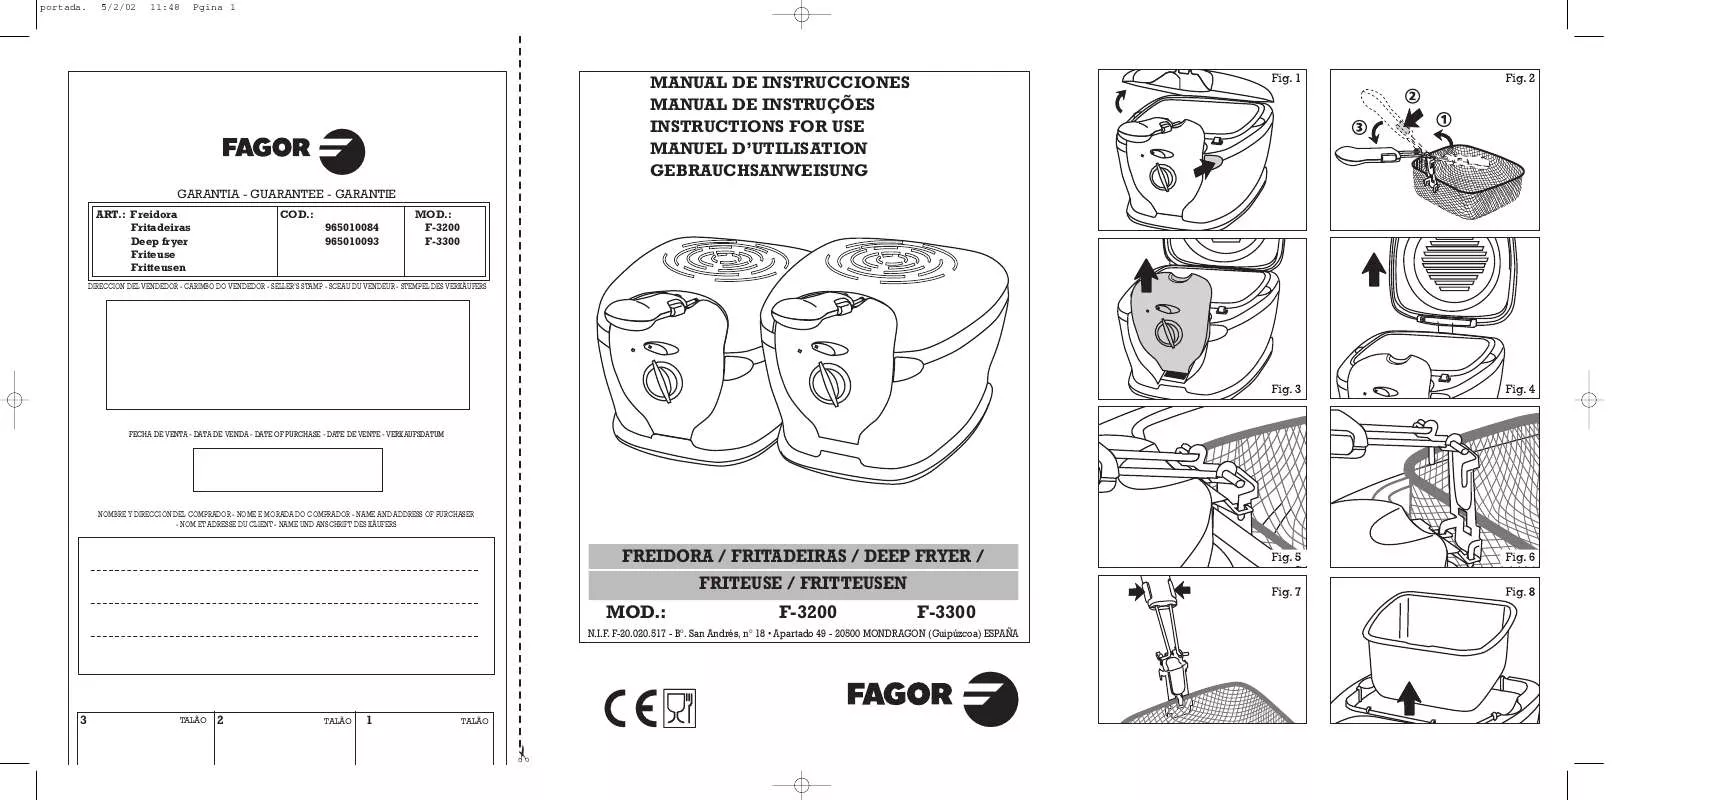 Mode d'emploi FAGOR F-3300F-3200